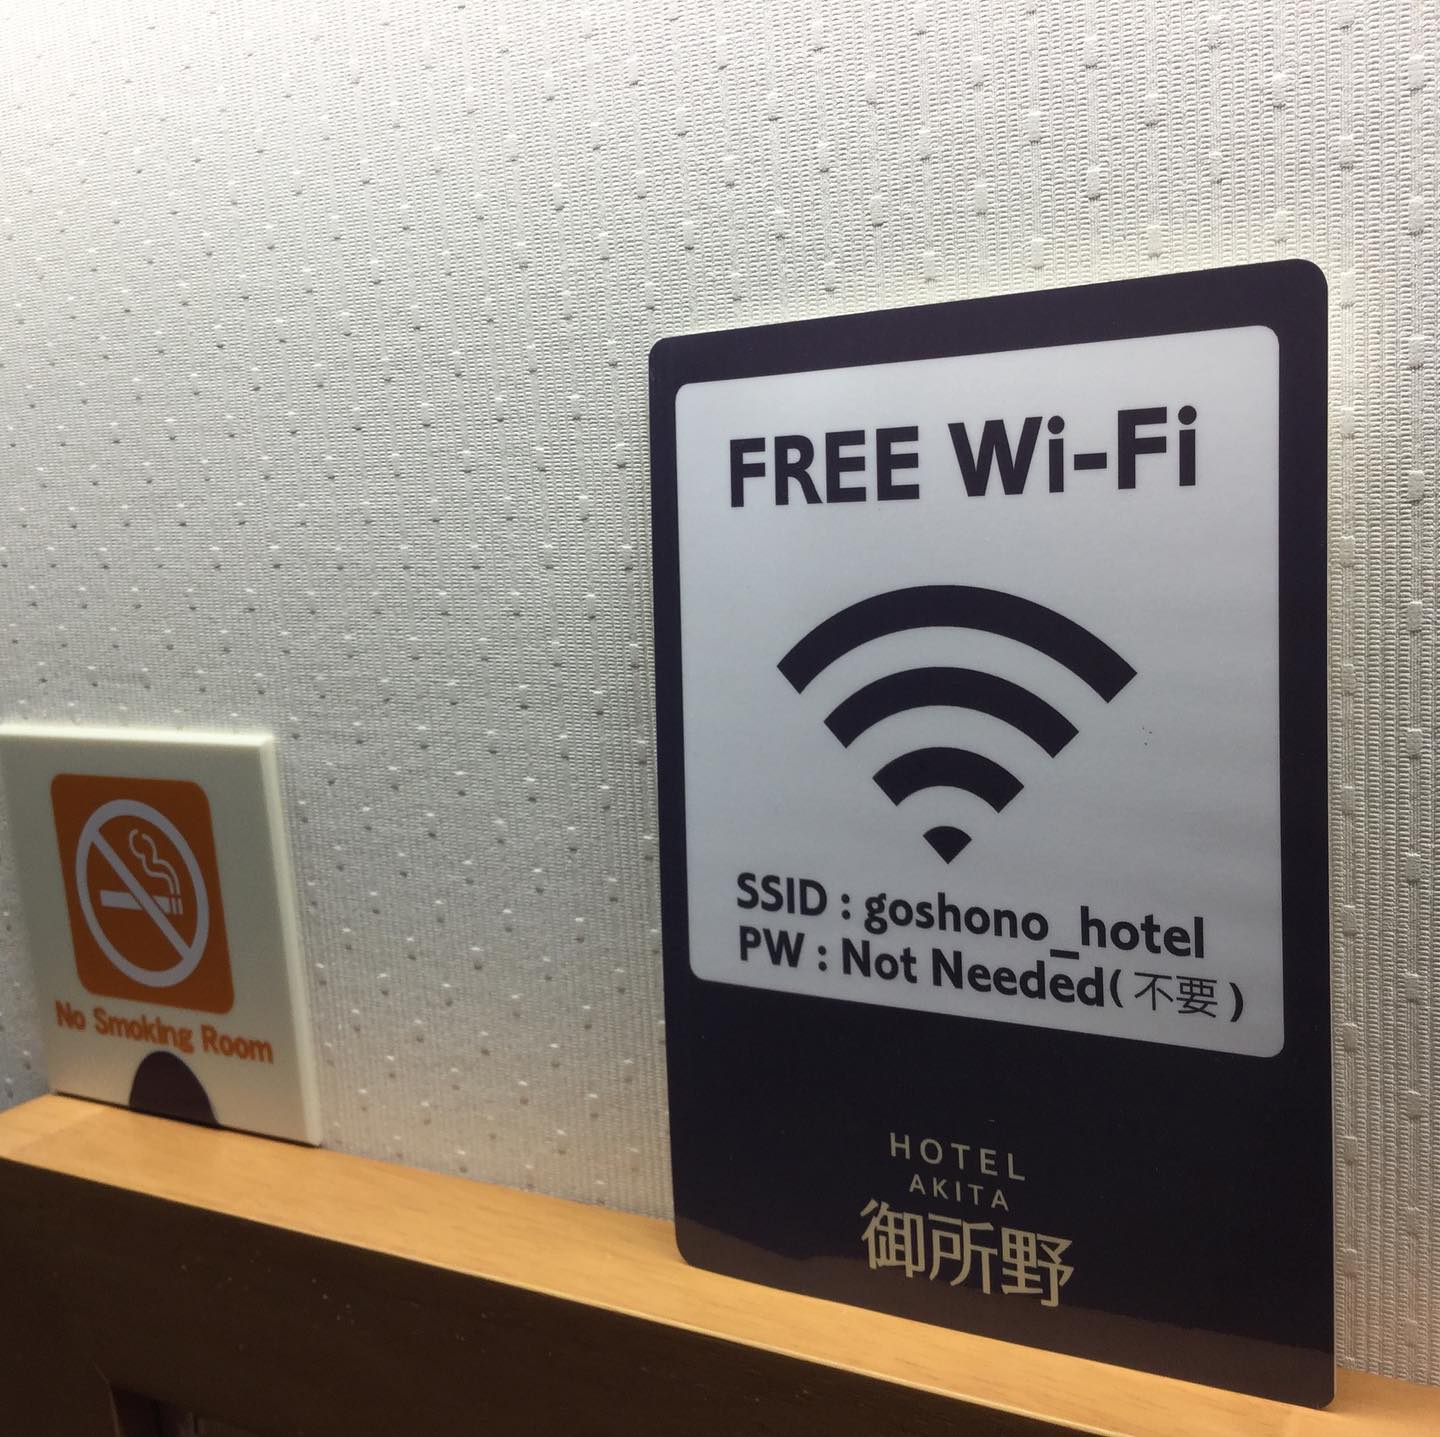 ホテル秋田御所野です。全てのお部屋にインターネット無料wifiとLANケーブルを完備してます#秋田市ホテル　#ビジネスホテル　#無料wifi  #wifi  #インターネット　#ホテルwifi  #御所野